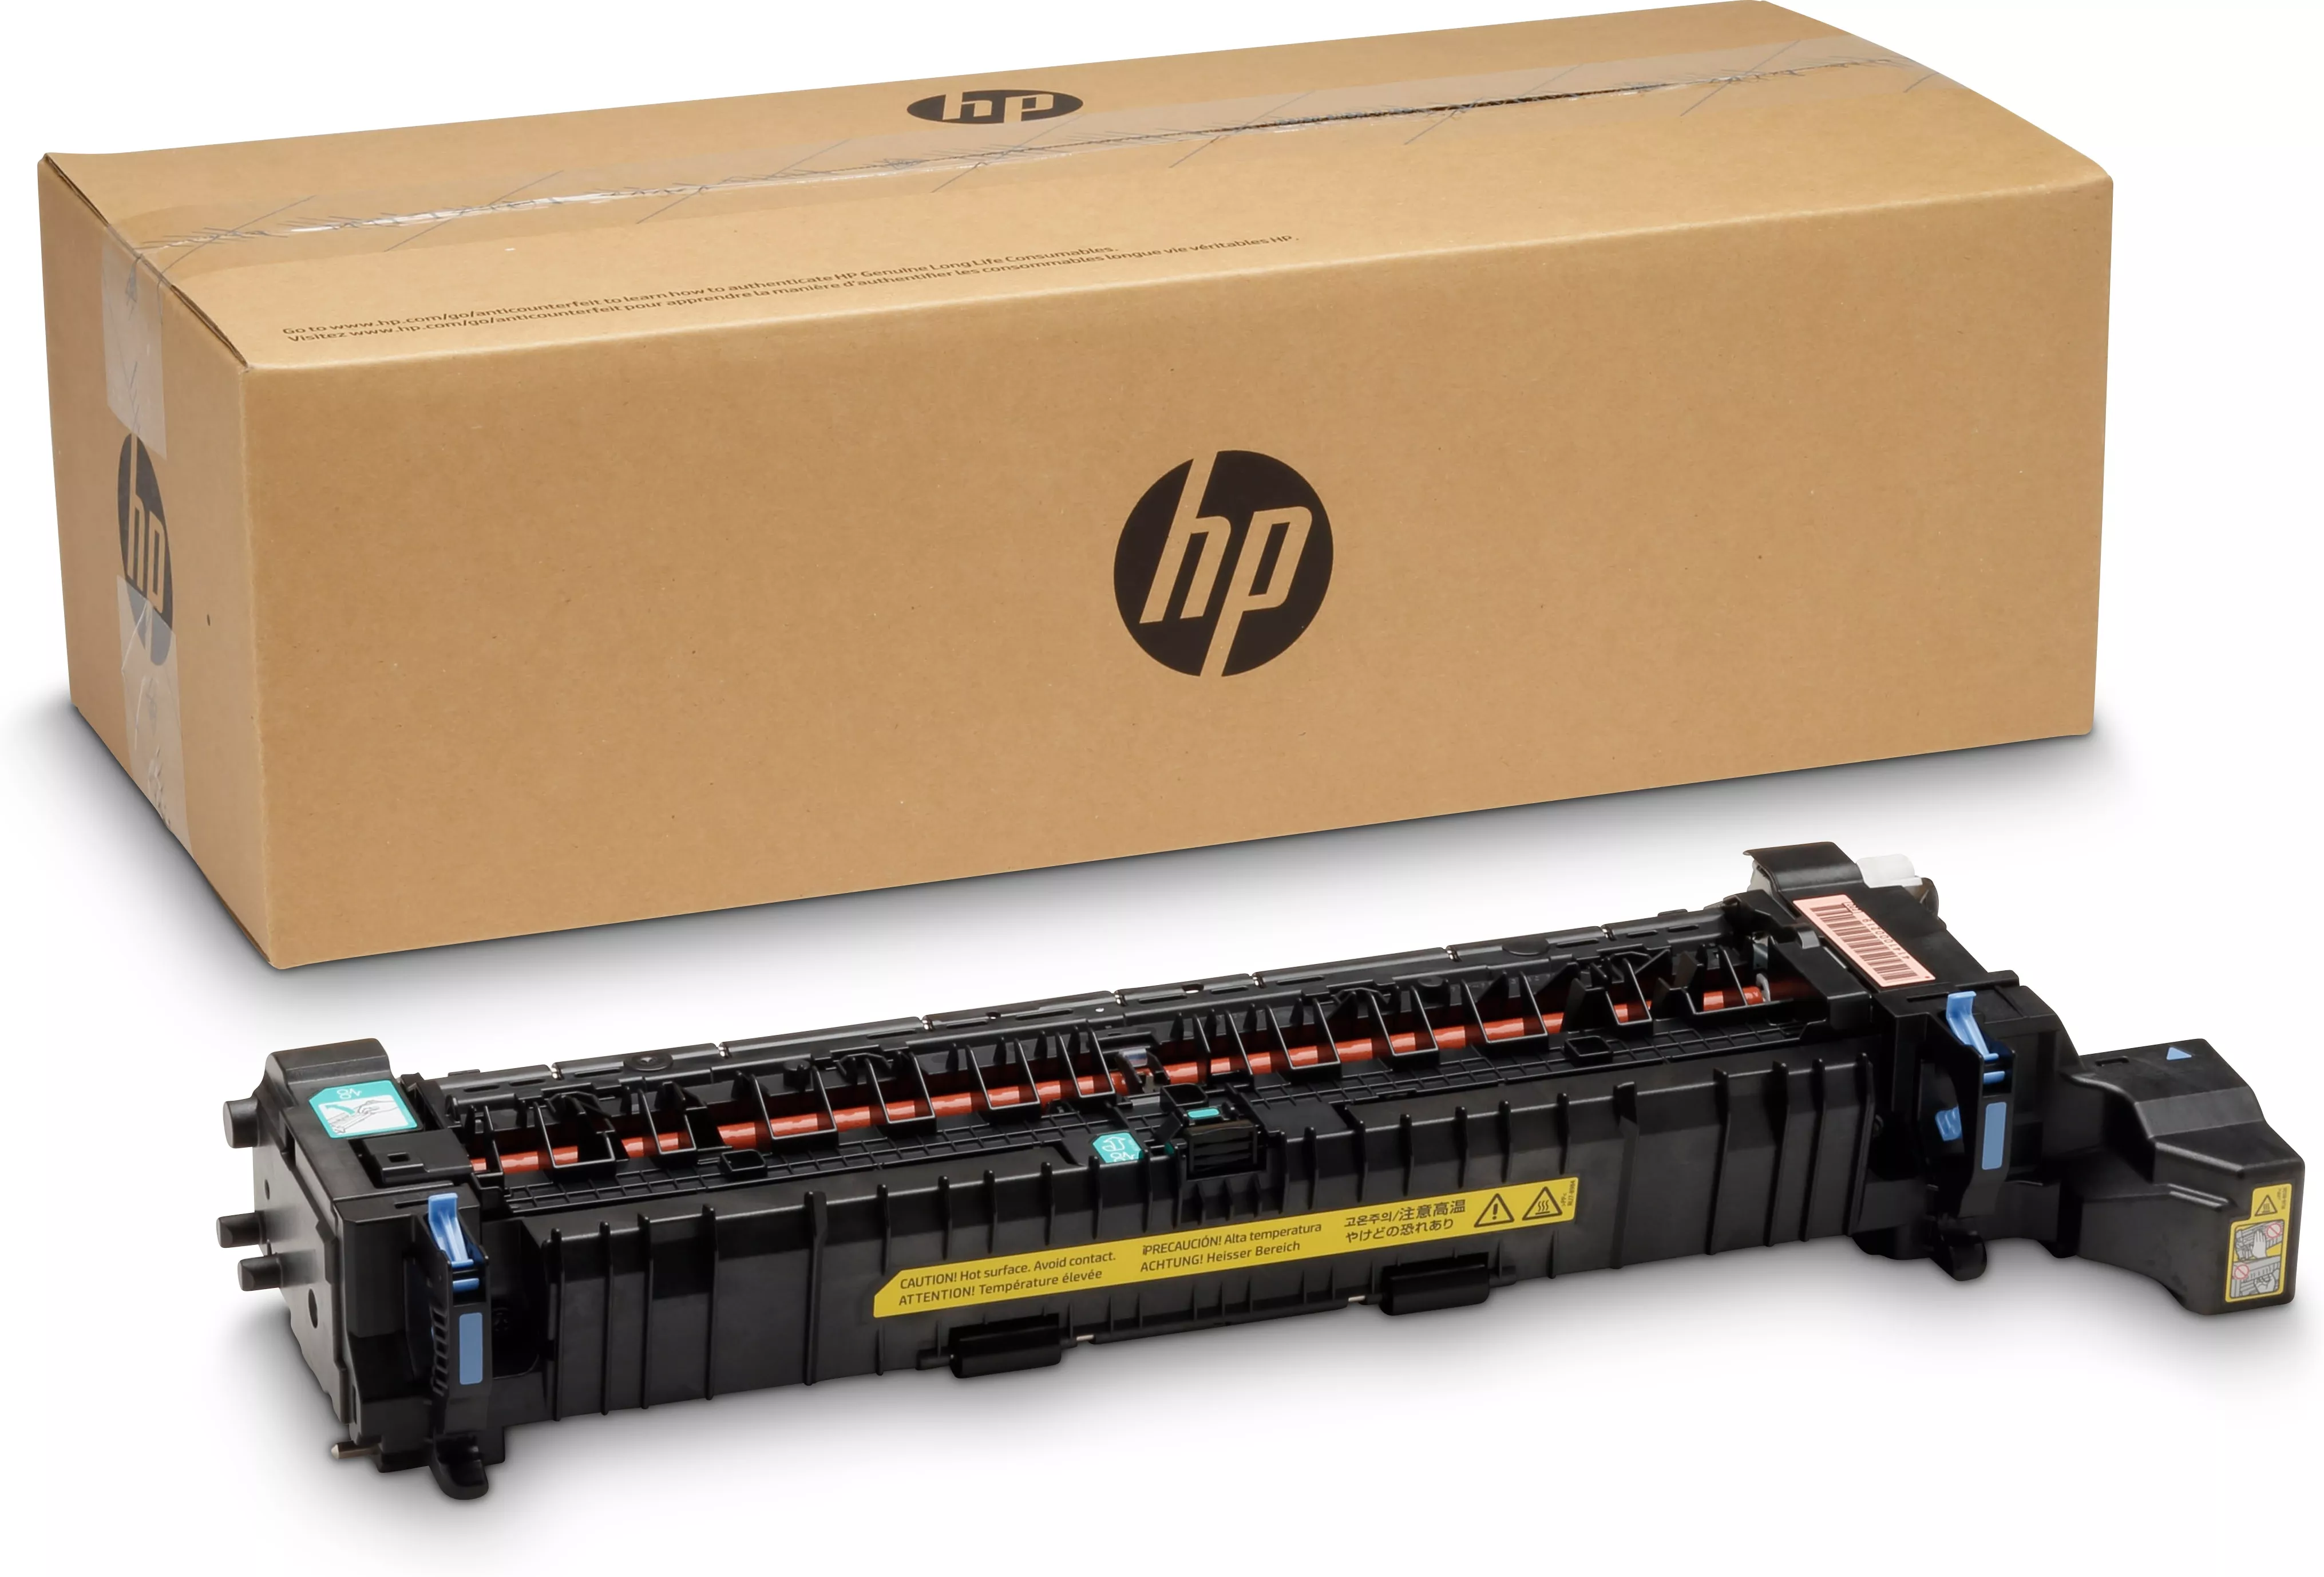 Vente Kit de fusion HP LaserJet 220 V HP au meilleur prix - visuel 2